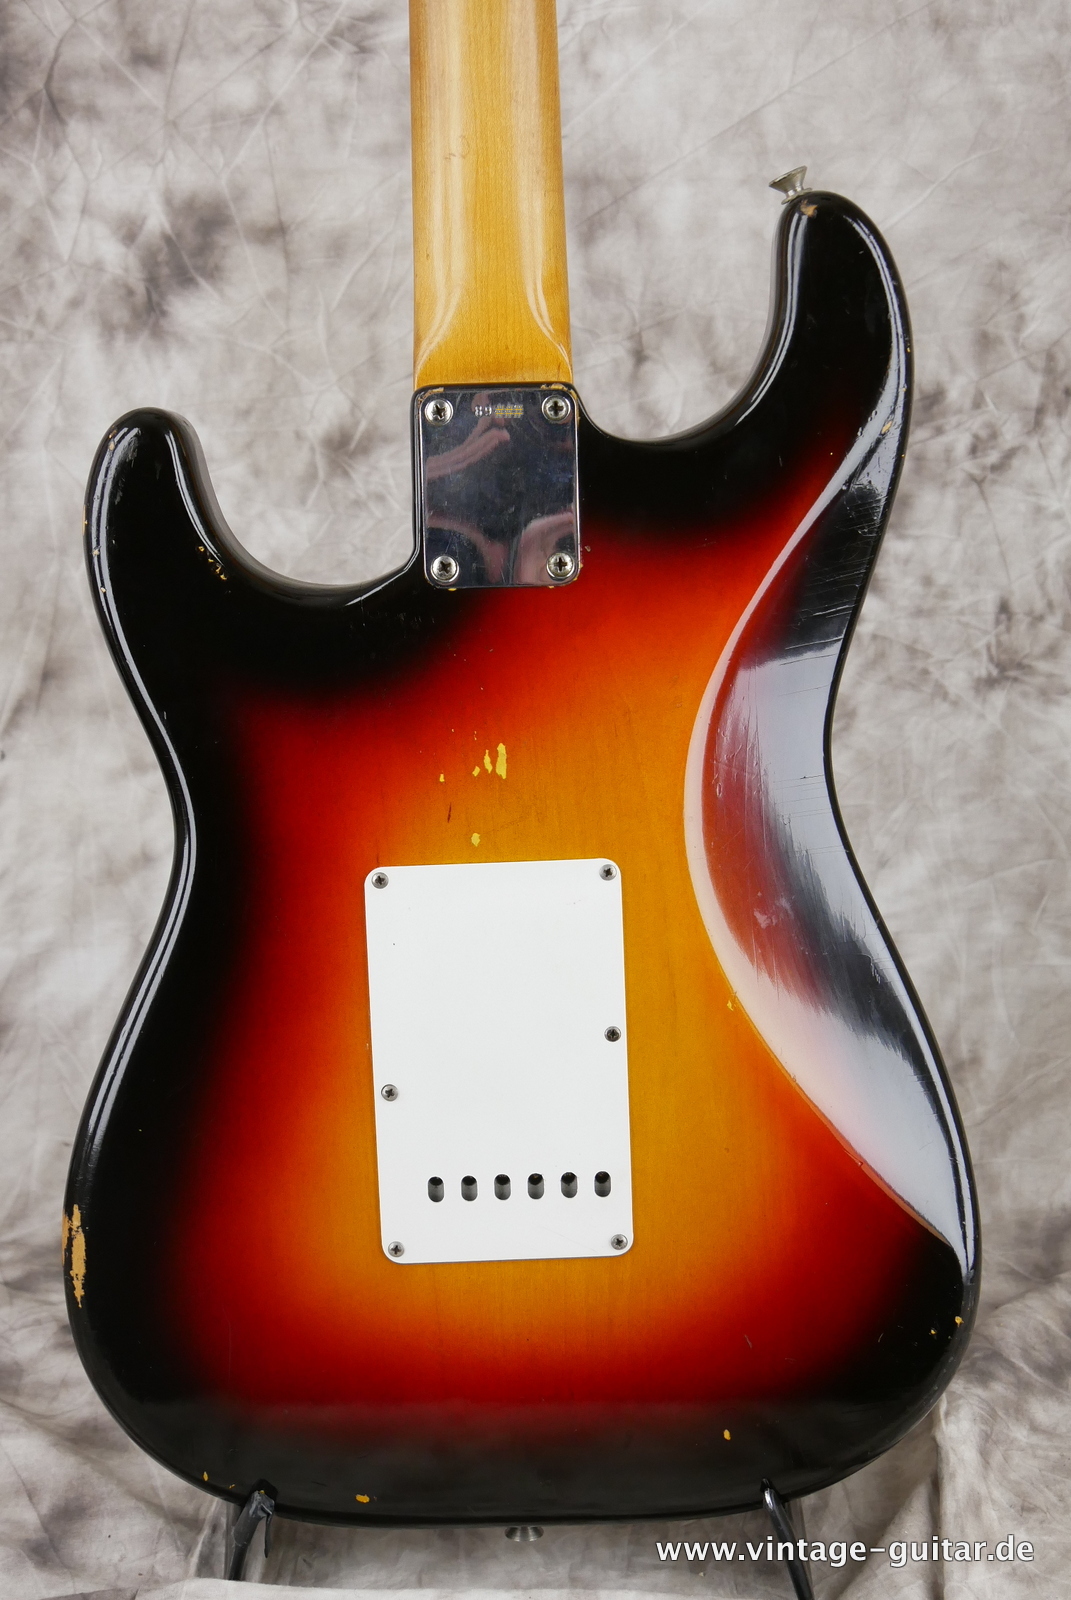 Fender_Stratocaster_sunburst_1963-004.JPG